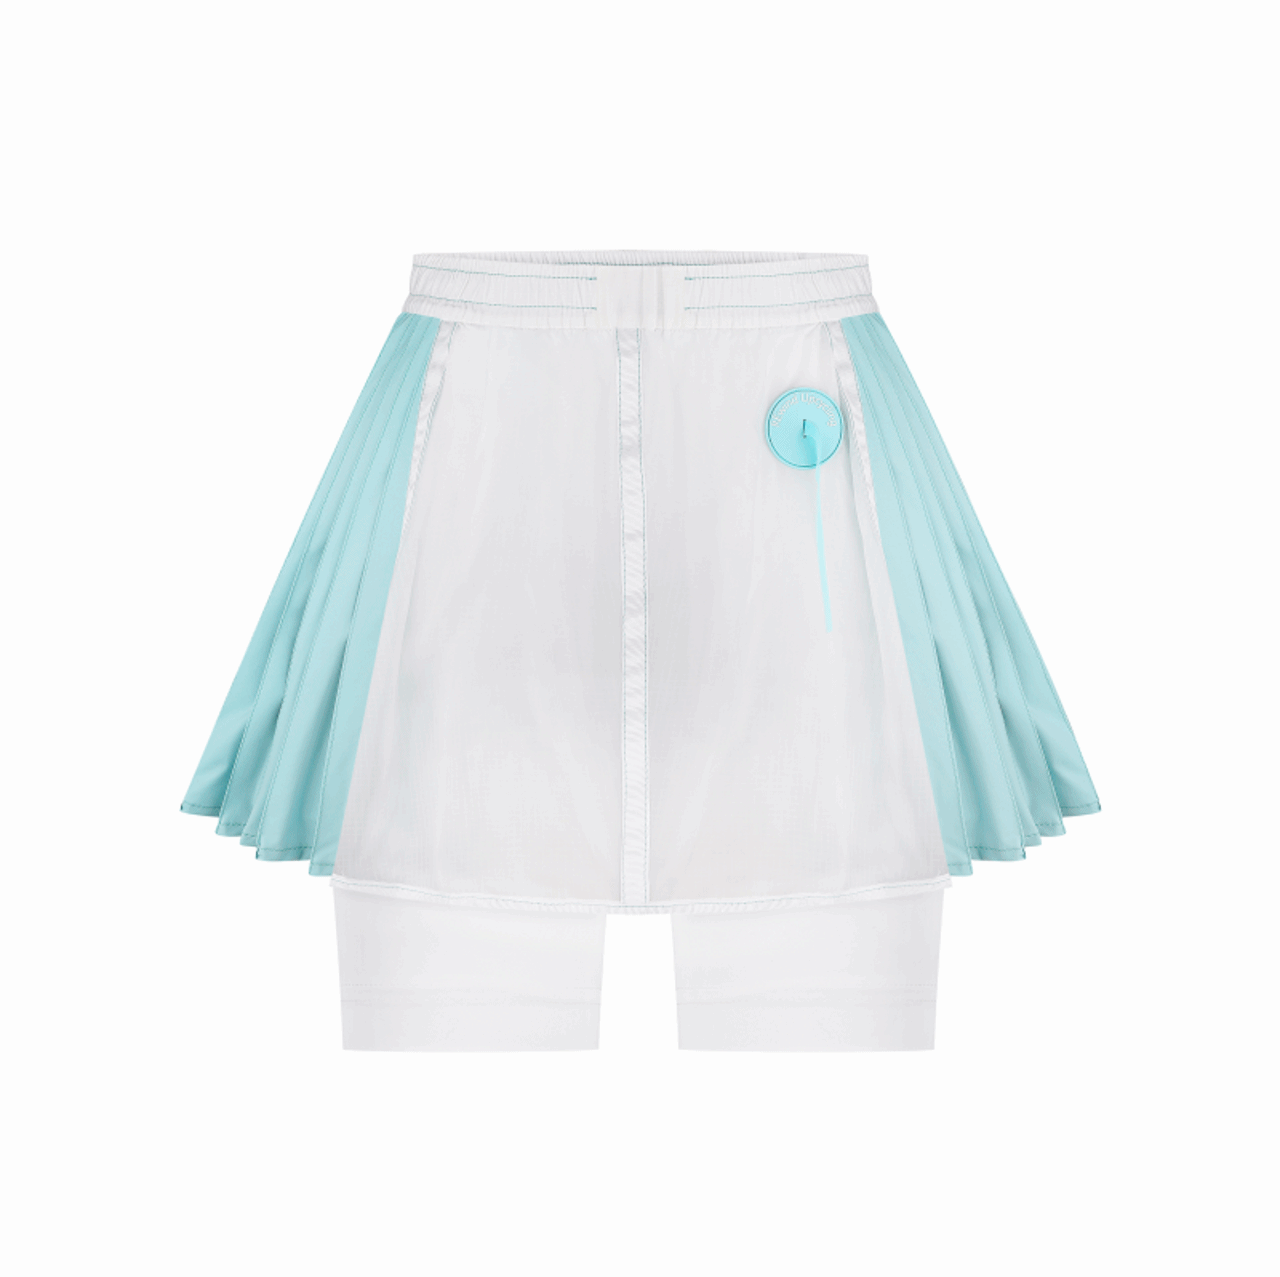 Skirt shorts from REwind, Ukraine